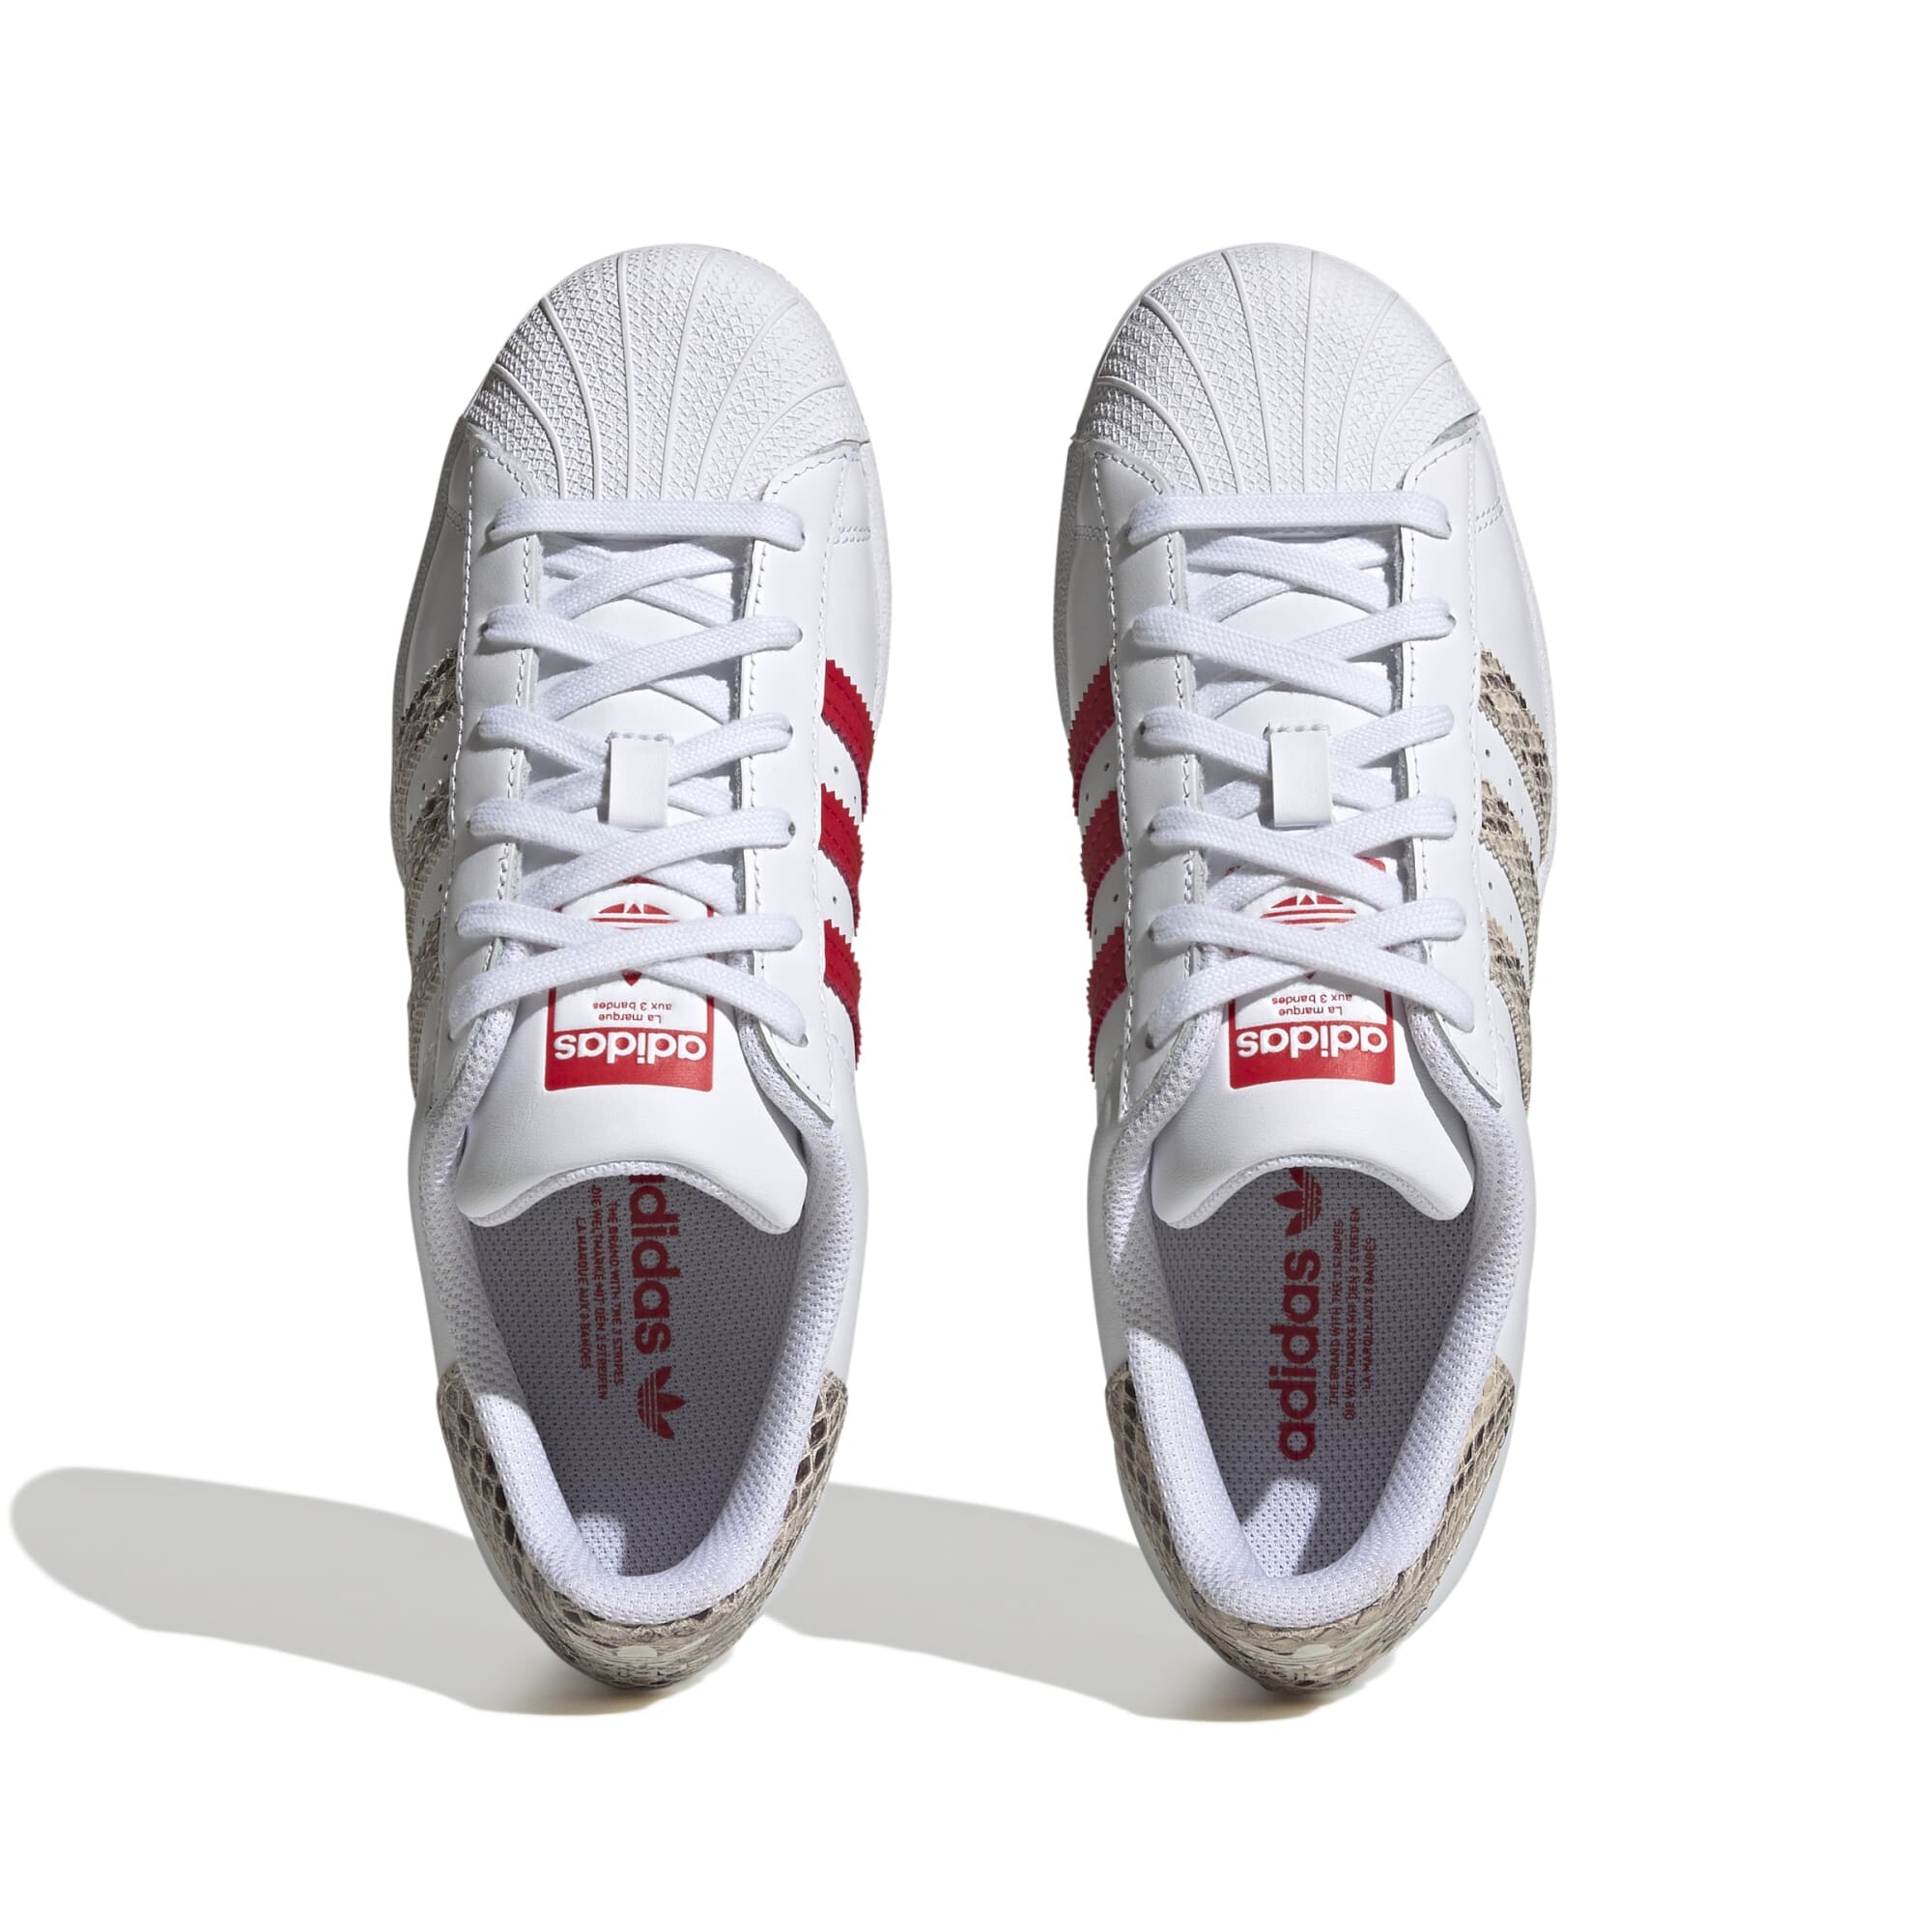 Adidas de Dama - SUPERSTAR - ADHQ1918 - WHITE/WONDER WHITE/BETTER SCARLET — Sportmarket